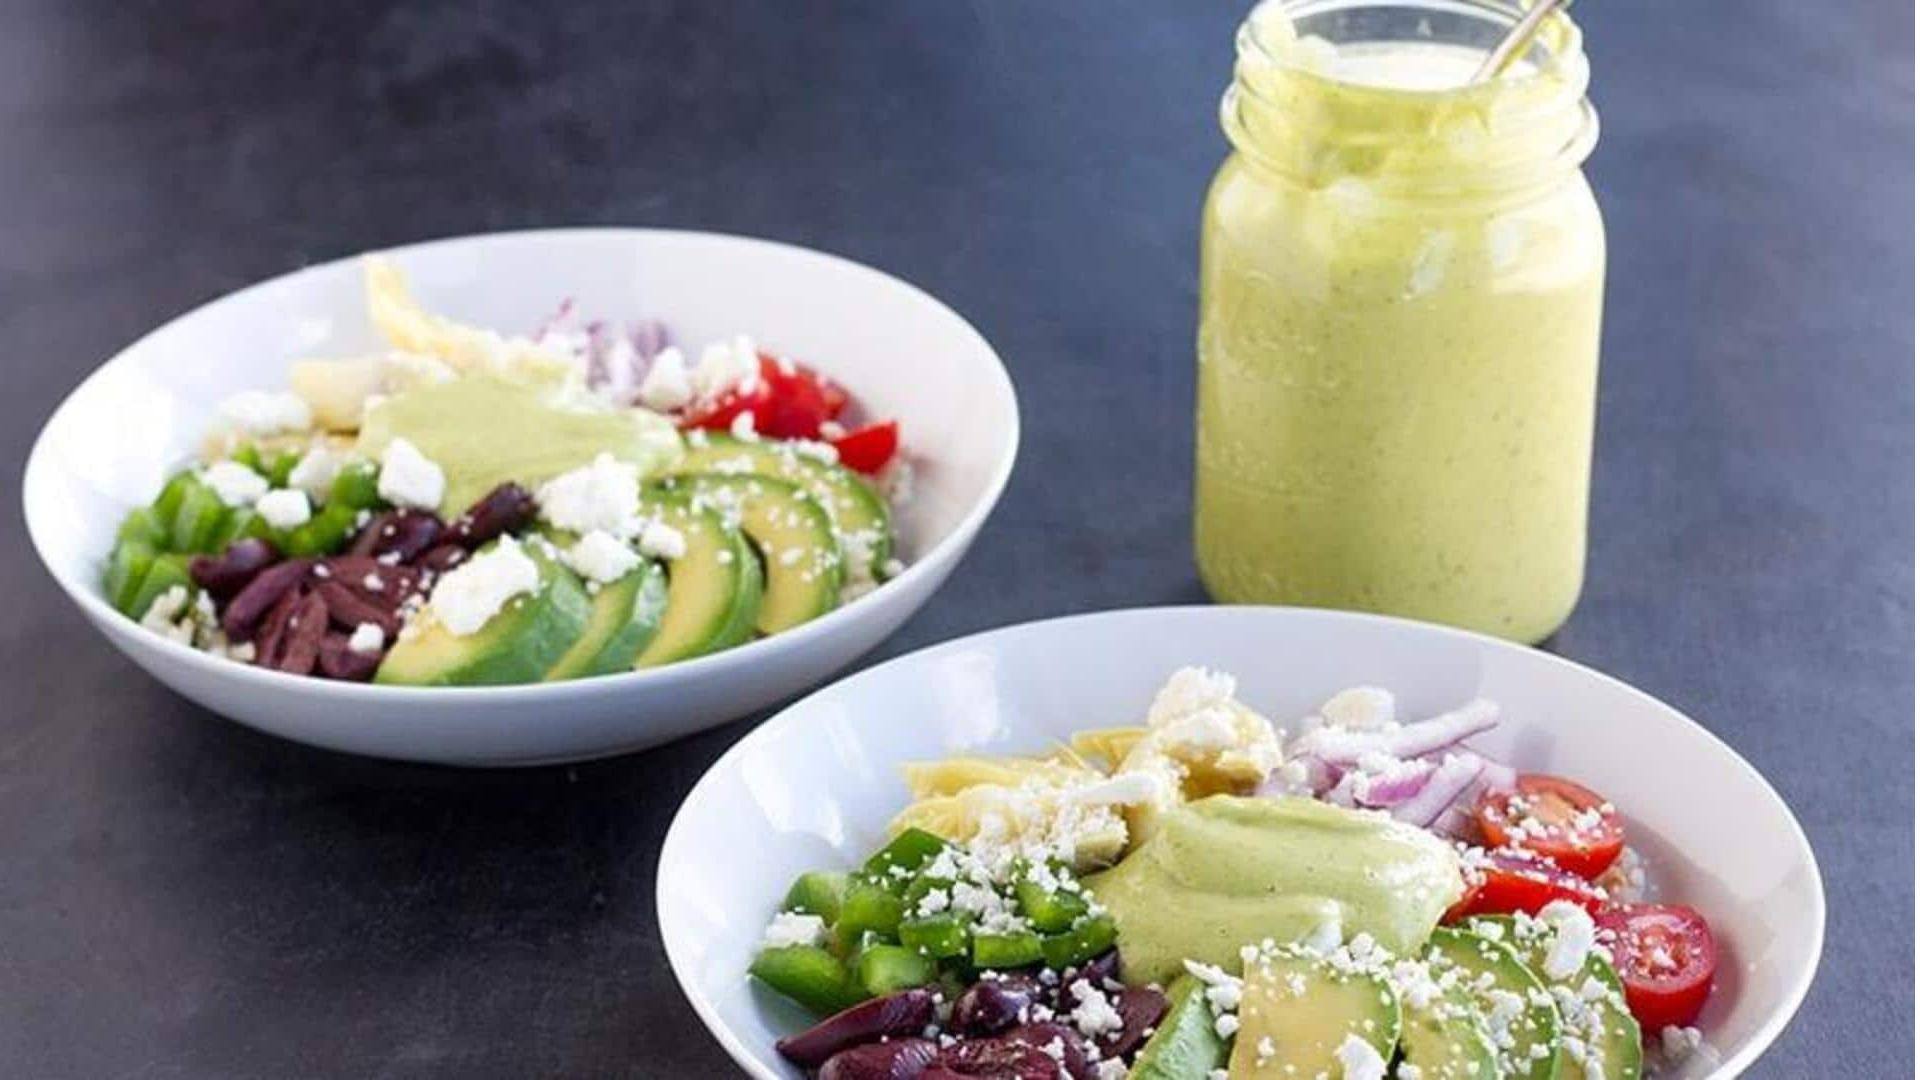 Buatlah salad Yunani alpukat ini di rumah. Berikut resepnya